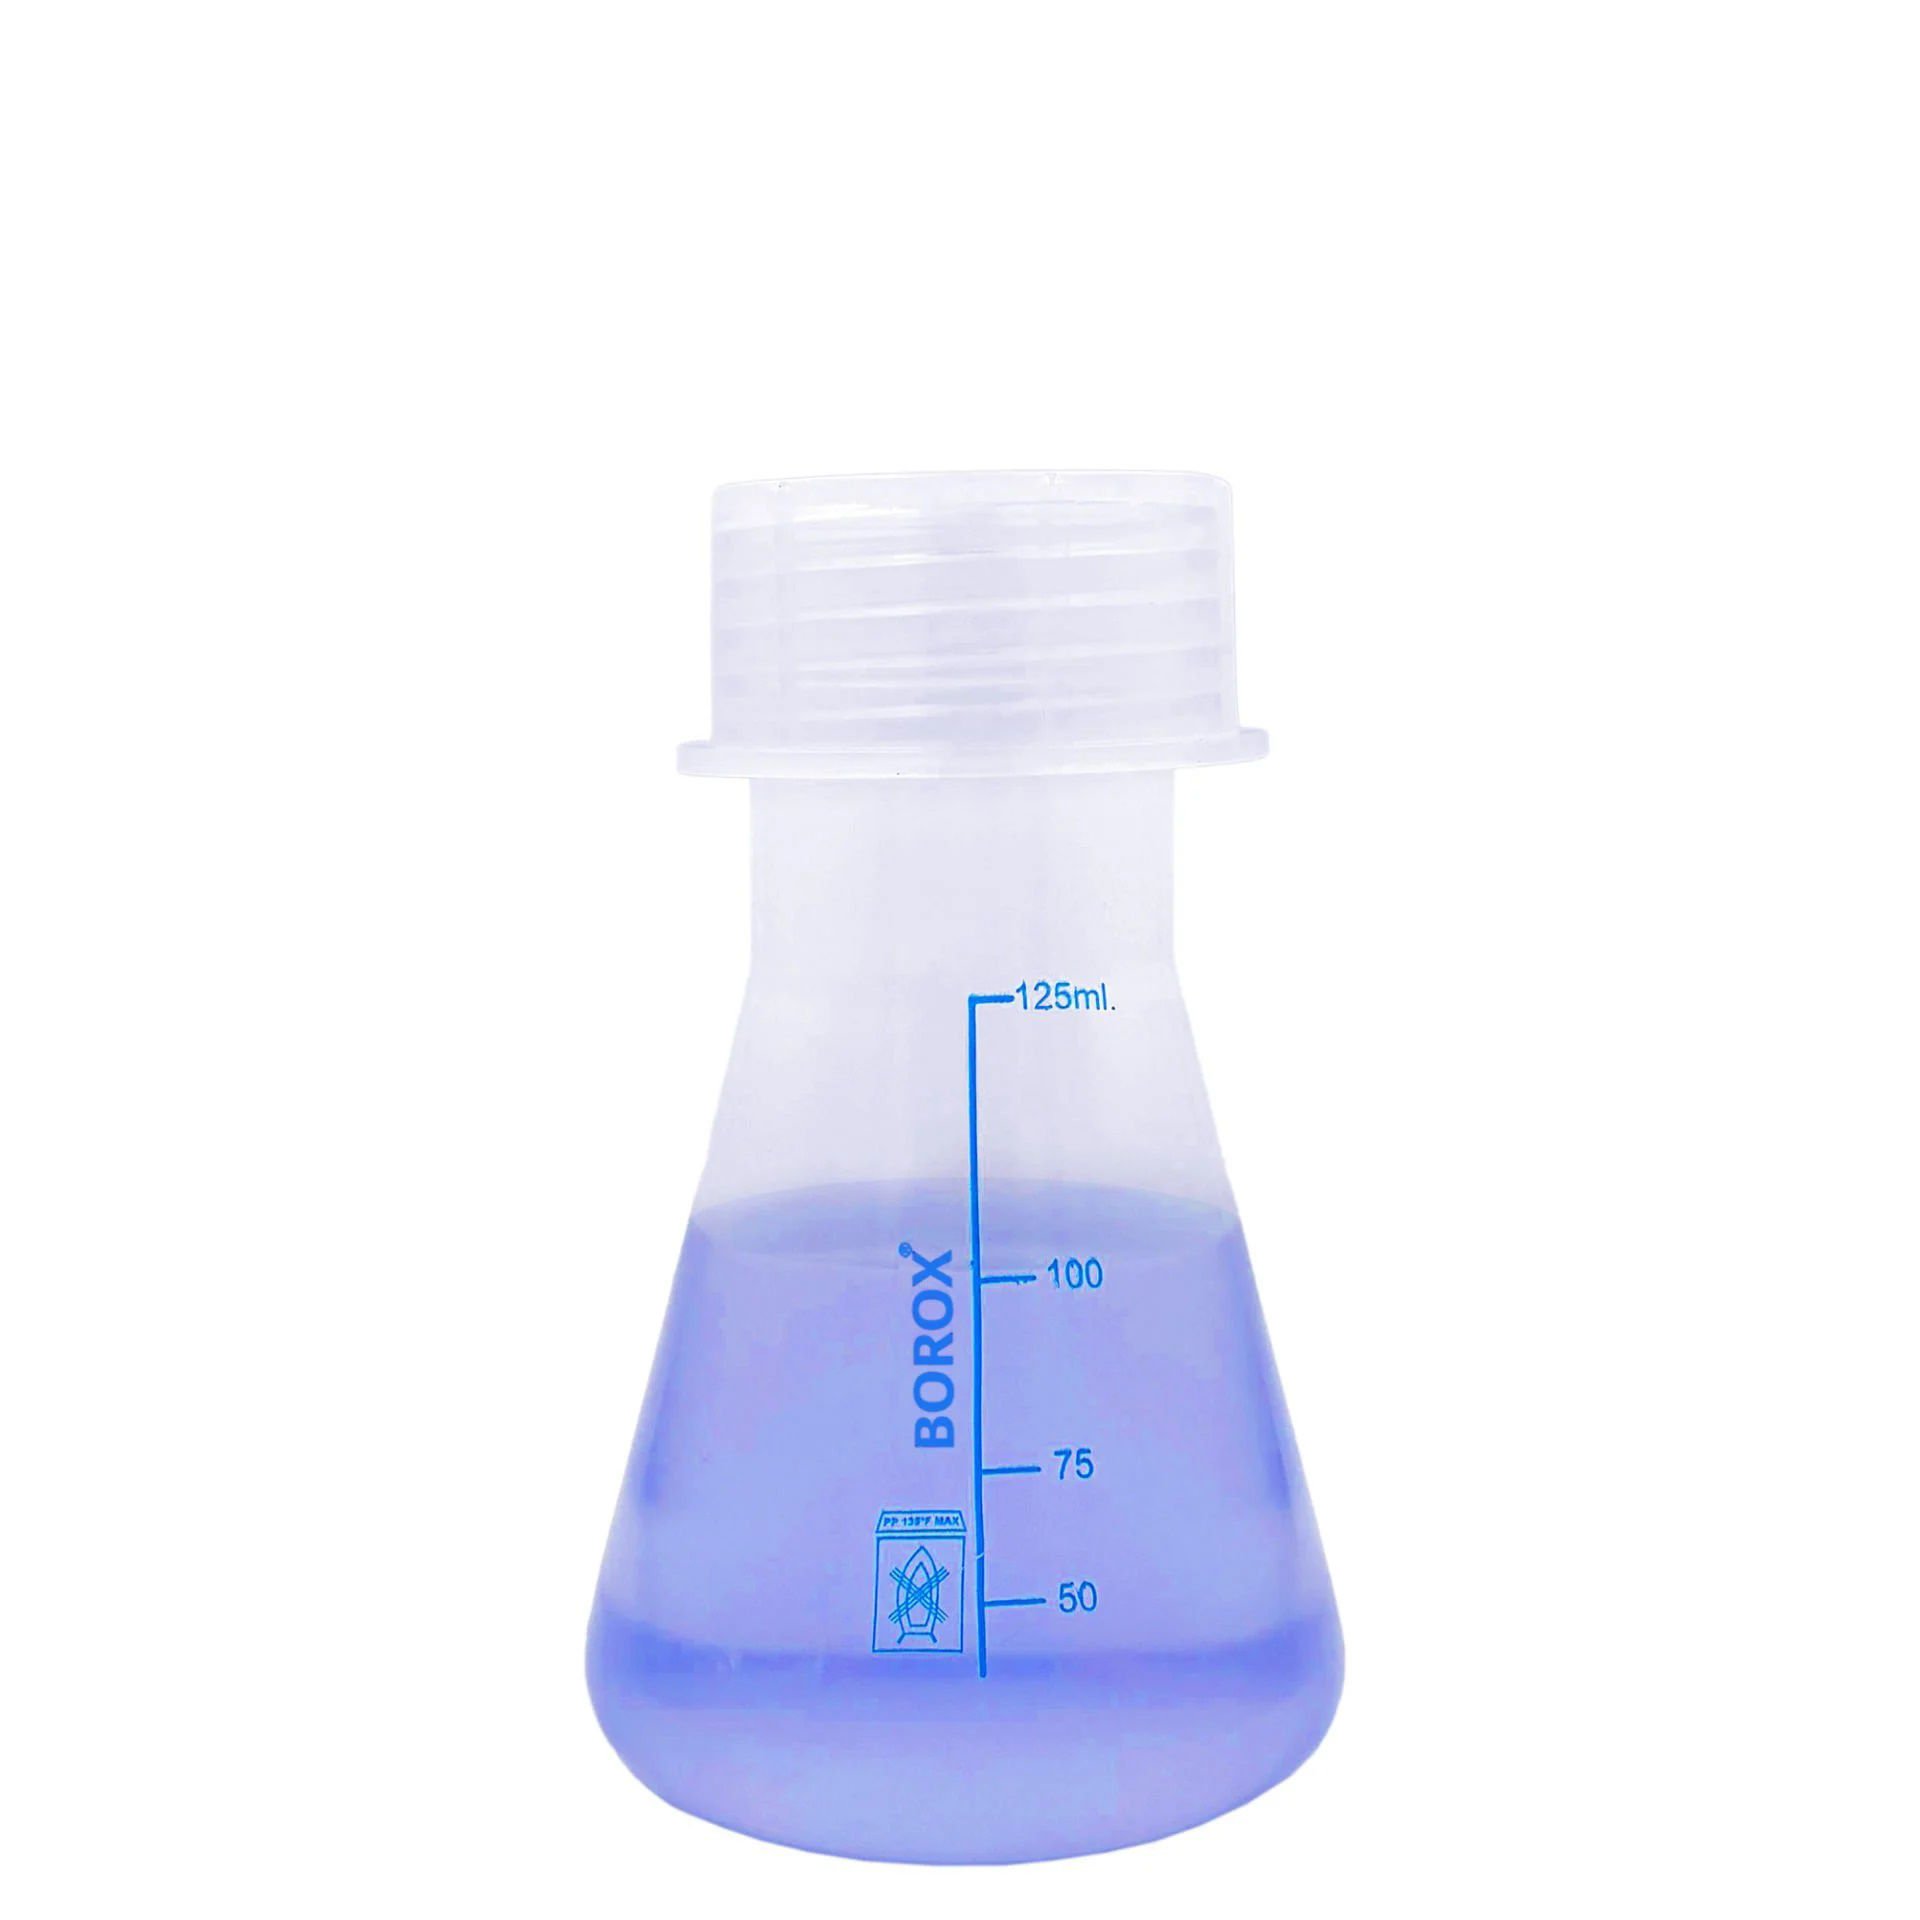 Borox Plastik Erlen 125 ml - Erlenmeyer Flask Vida Kapaklı - Mavi Skala